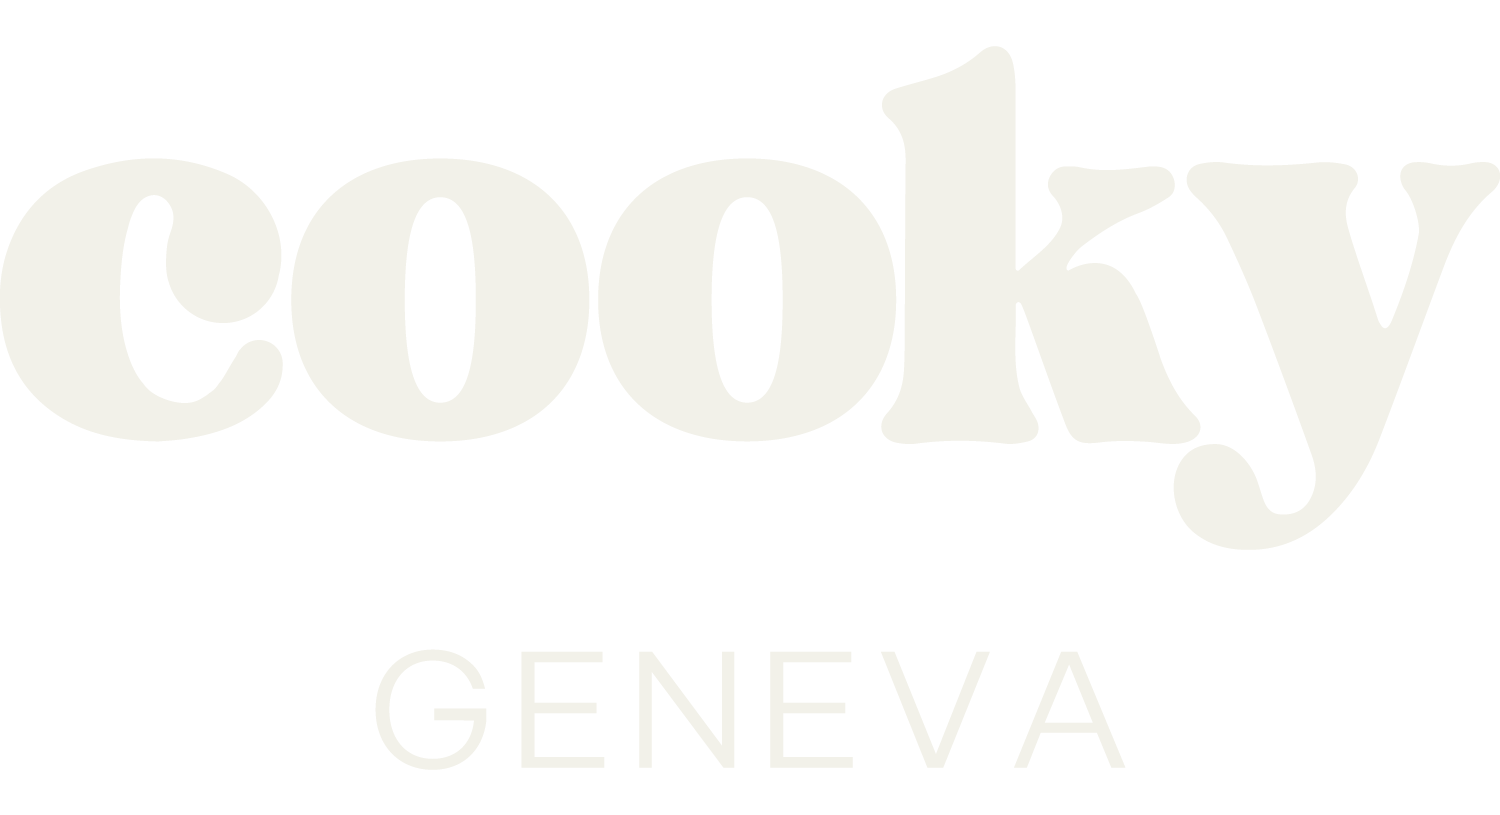 Cooky Geneva